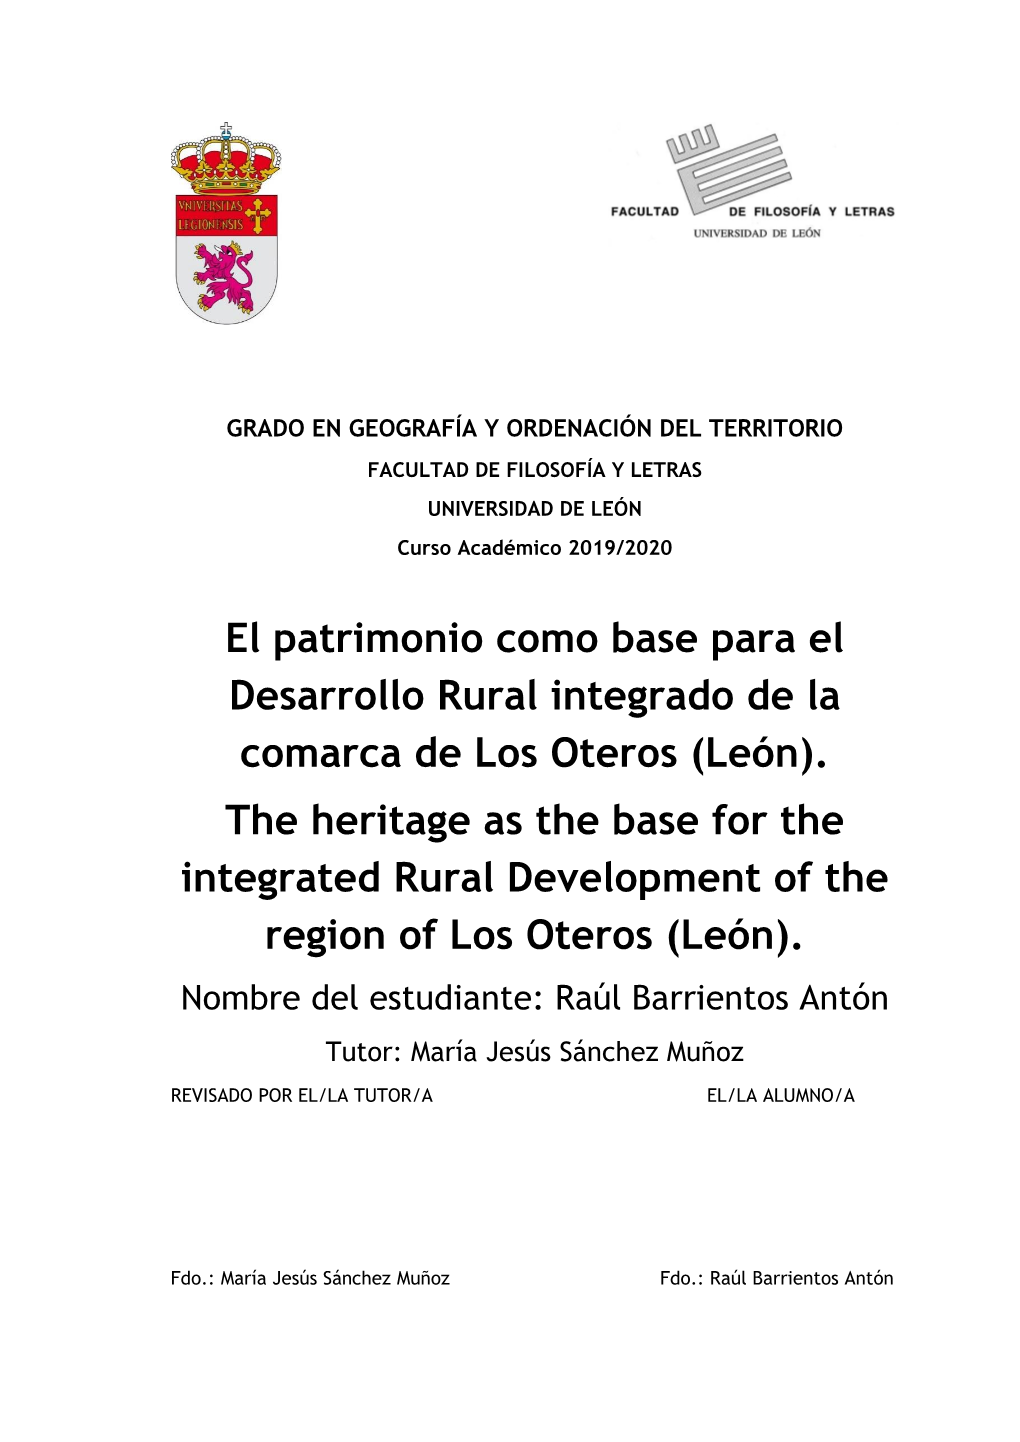 El Patrimonio Como Base Para El Desarrollo Rural Integrado De La Comarca De Los Oteros (León)